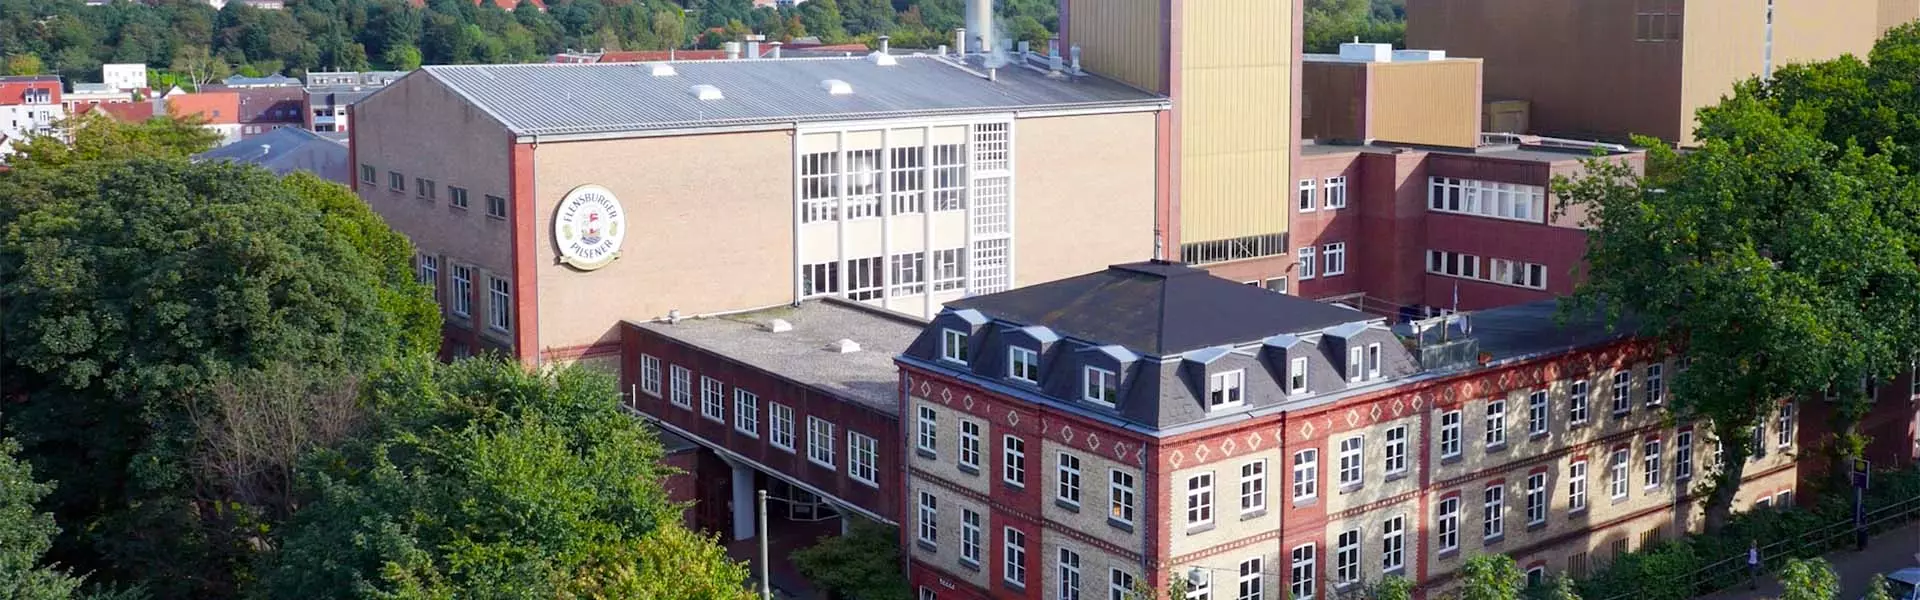 Gebäude der Flensburger Brauerei